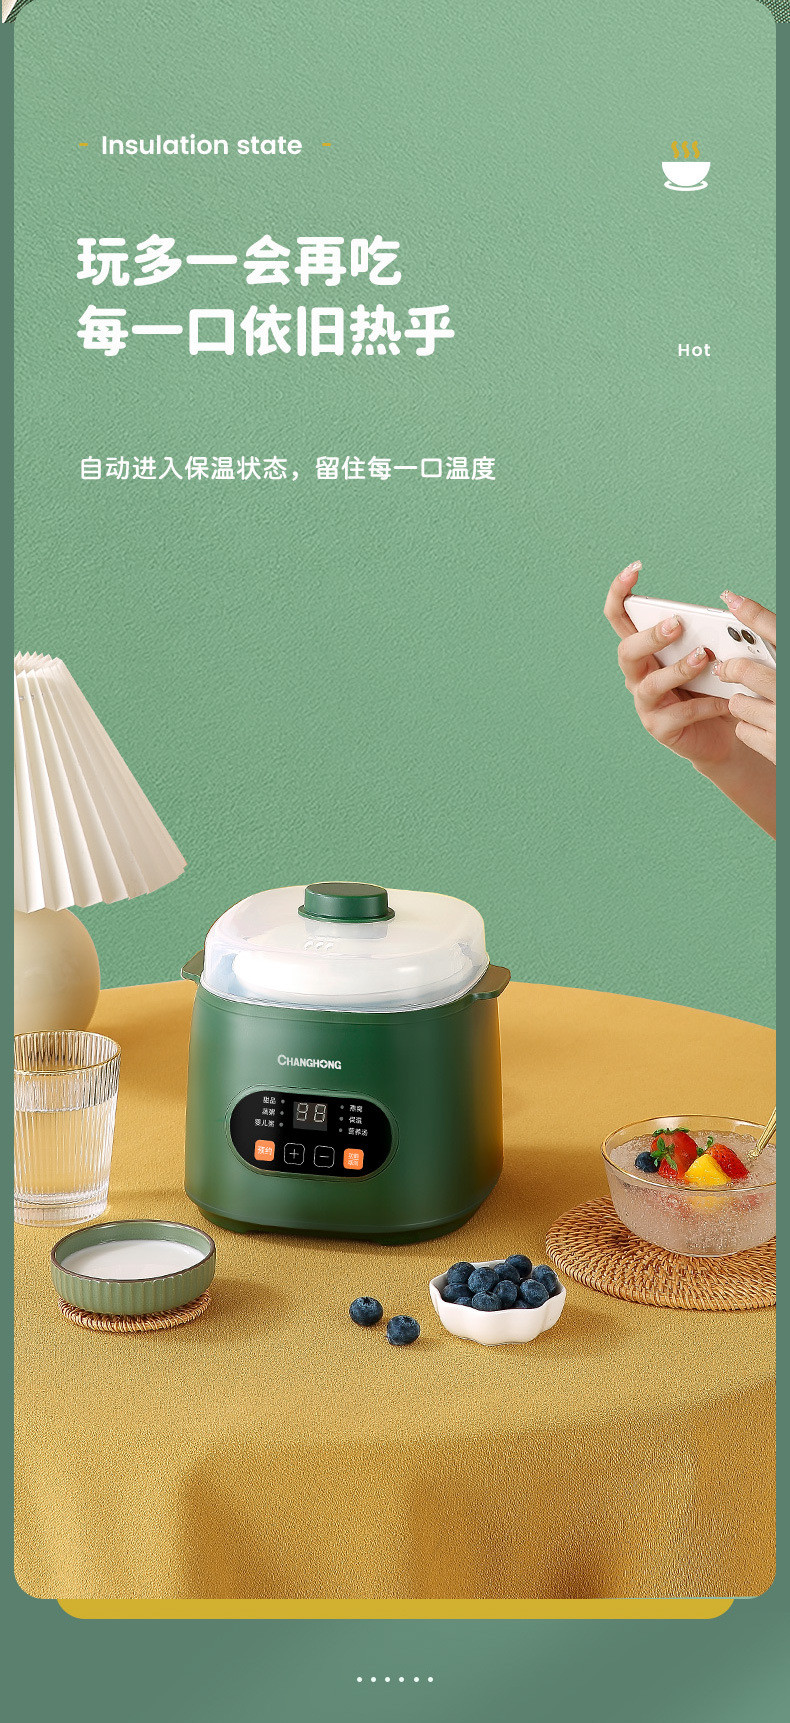 长虹/CHANGHONG 【券后69.8元】电炖锅家用陶瓷全自动电汤锅炖锅煲汤炖汤